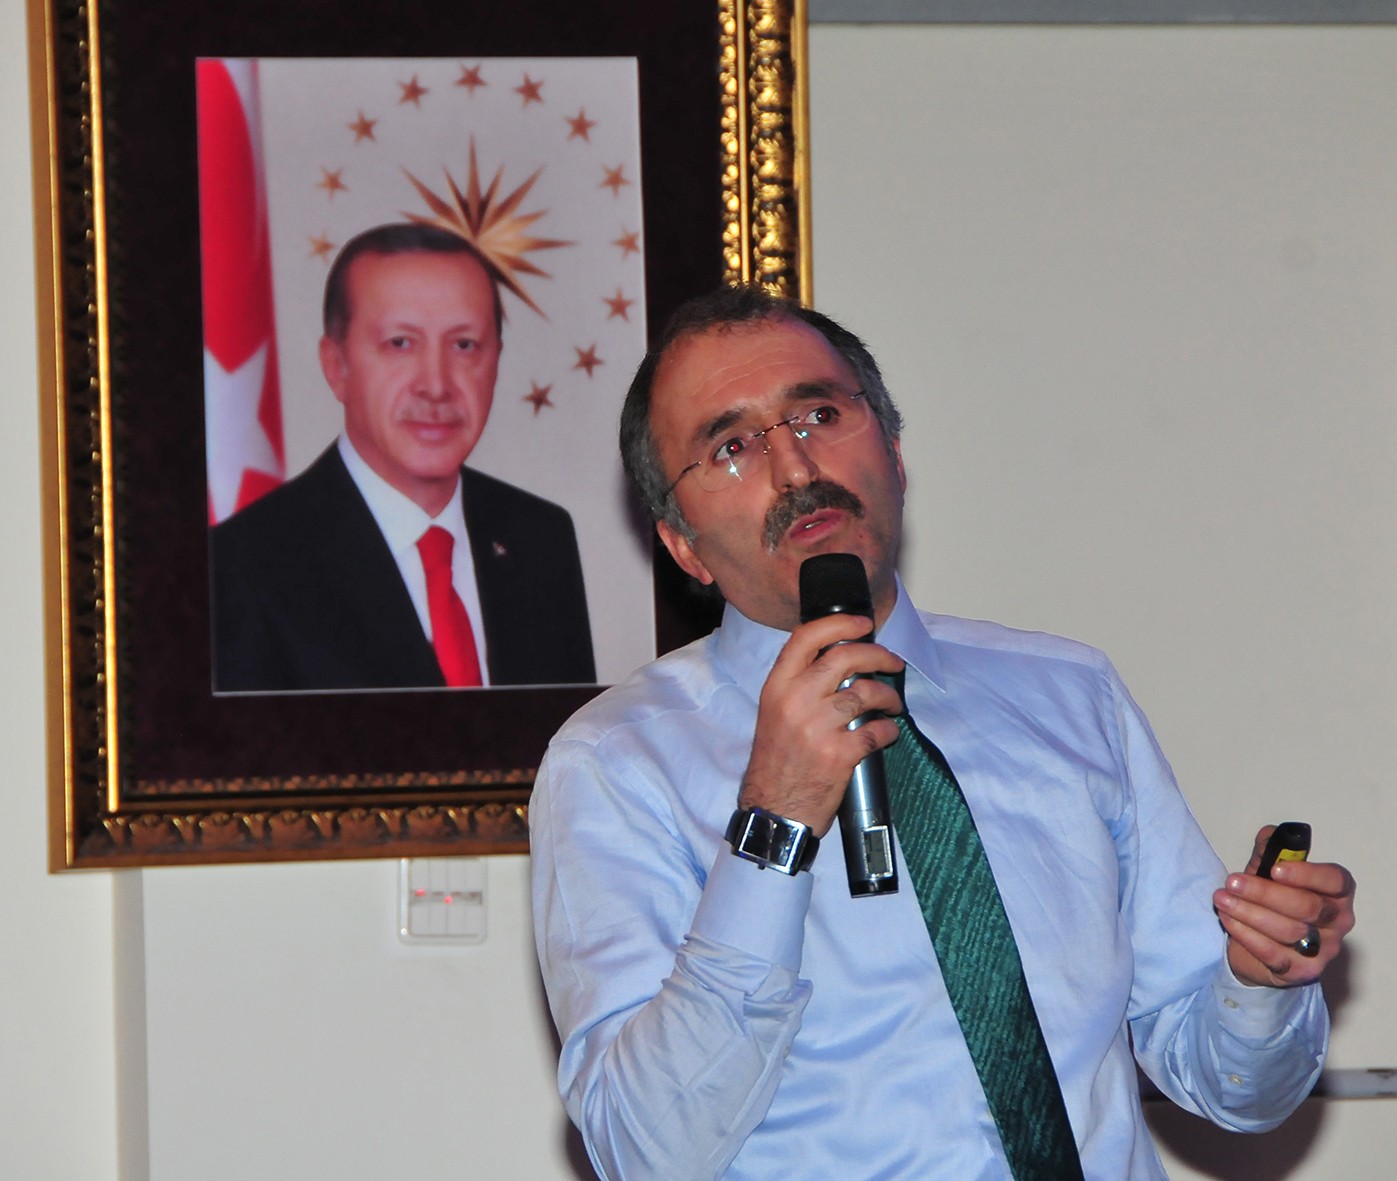 Maliye Bakan Yardımcısı Yavilioğlu, referandum için 4 bin 890 kilometre katetti